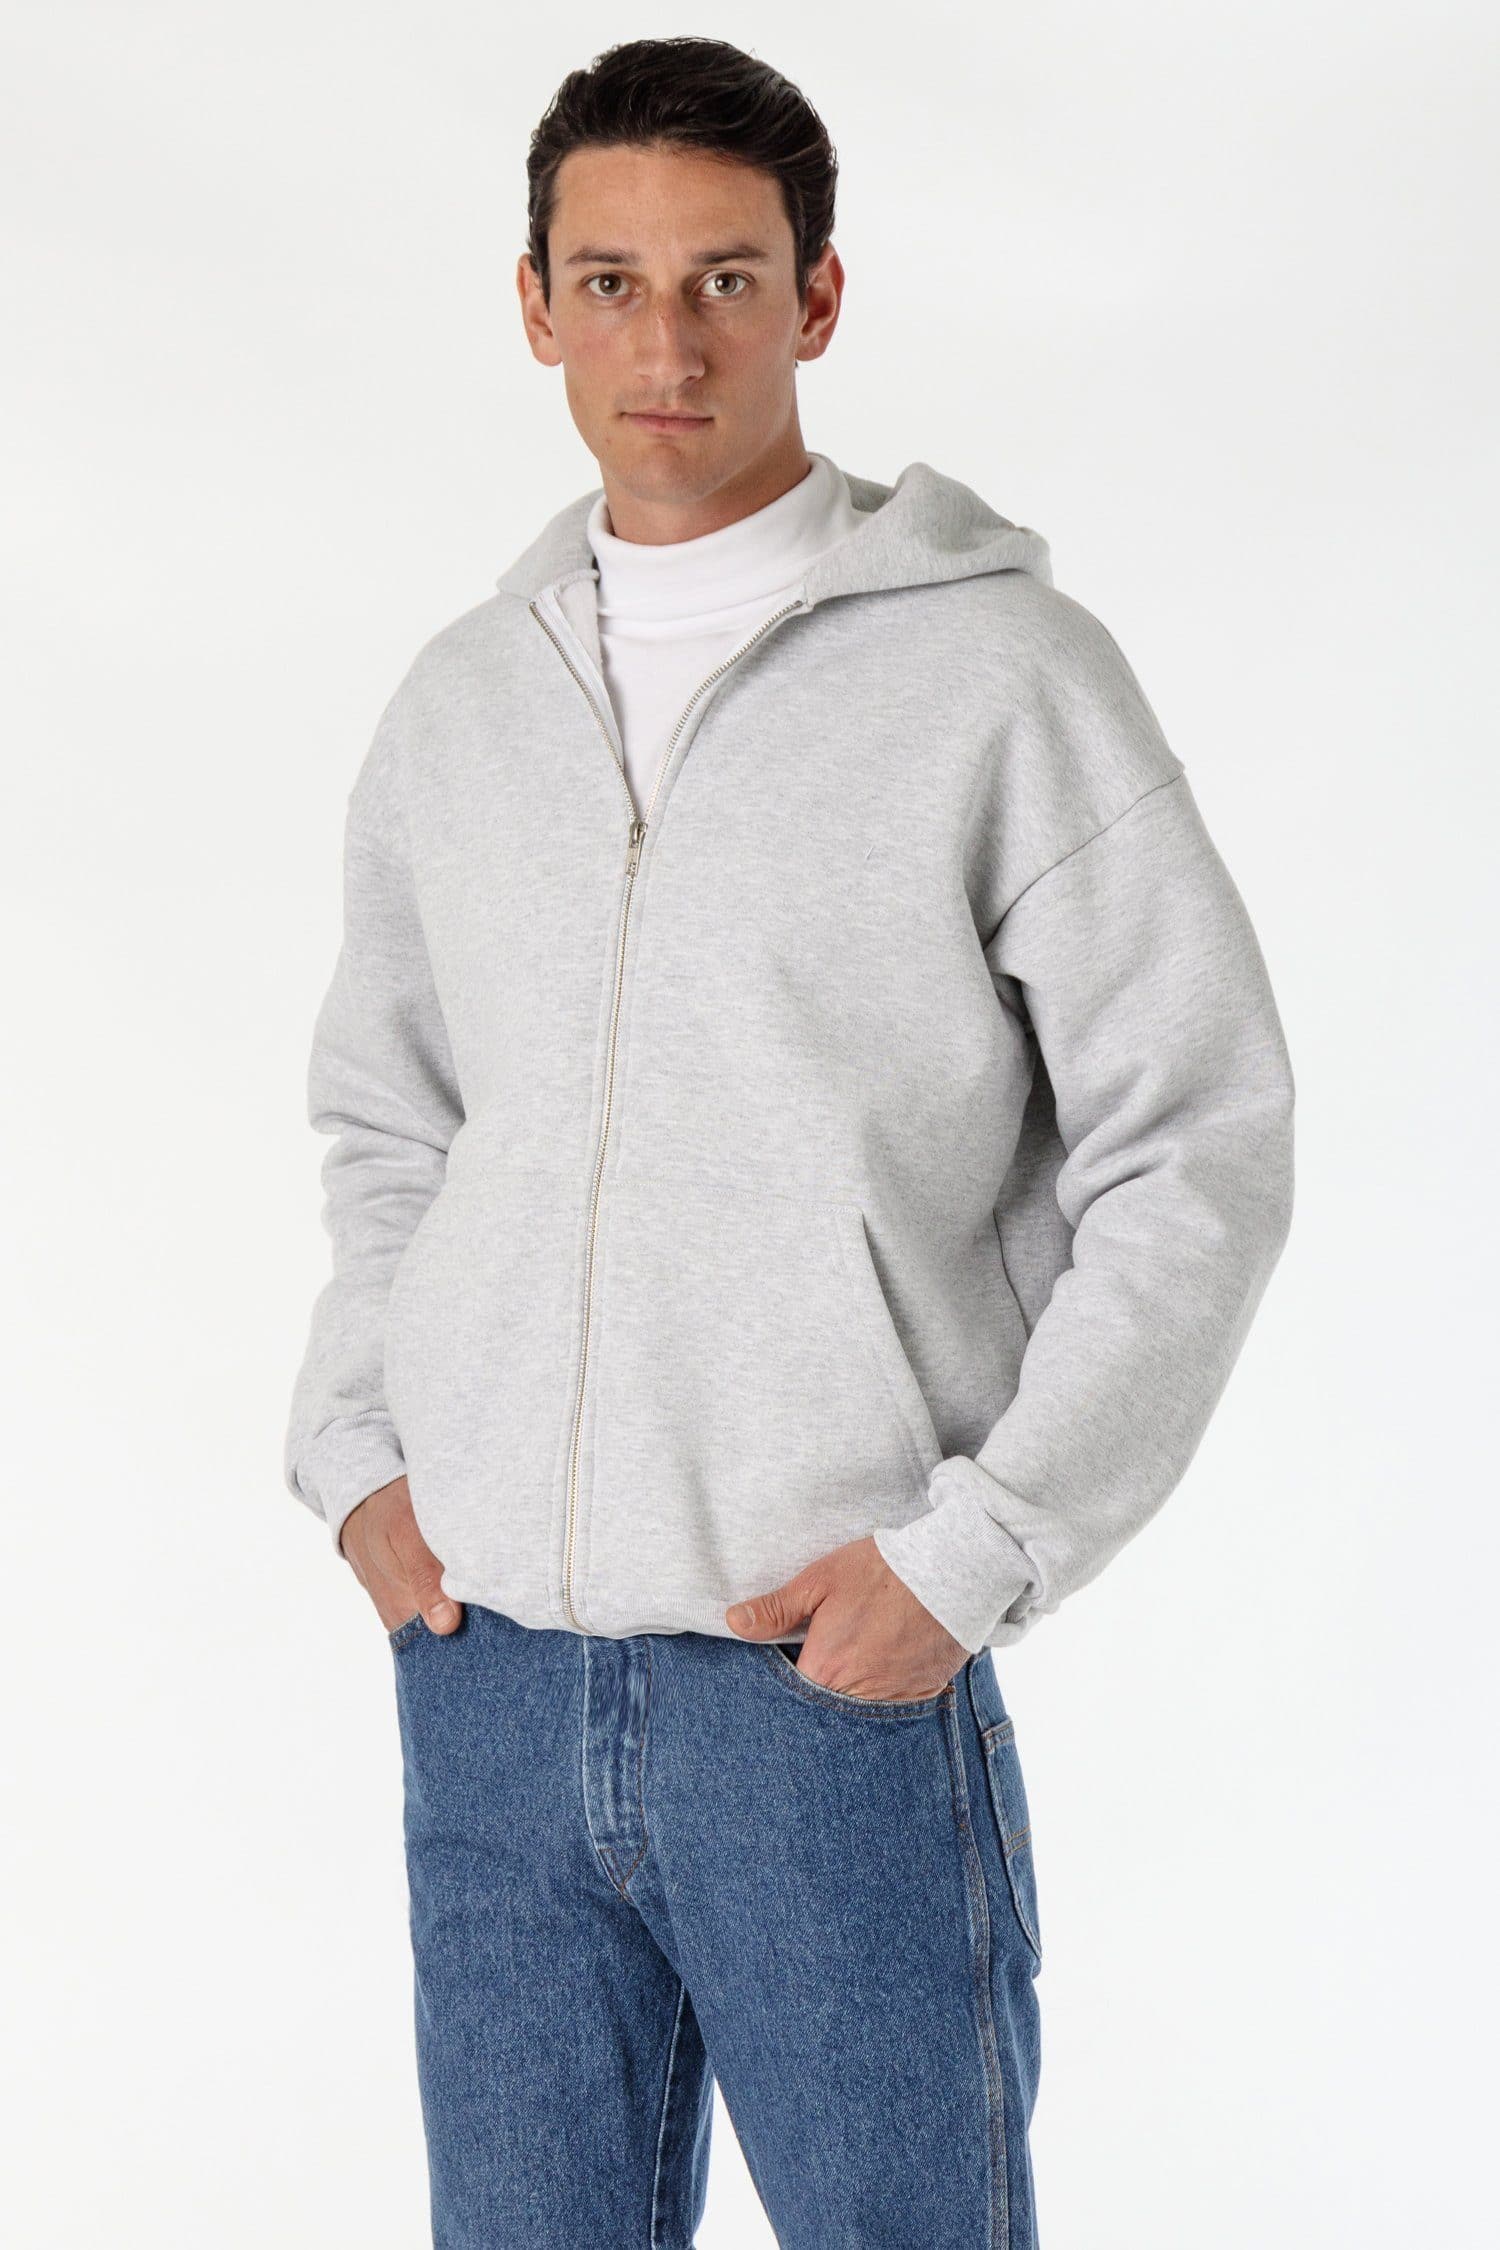 Men's Sweatshirts - Zip-Ups